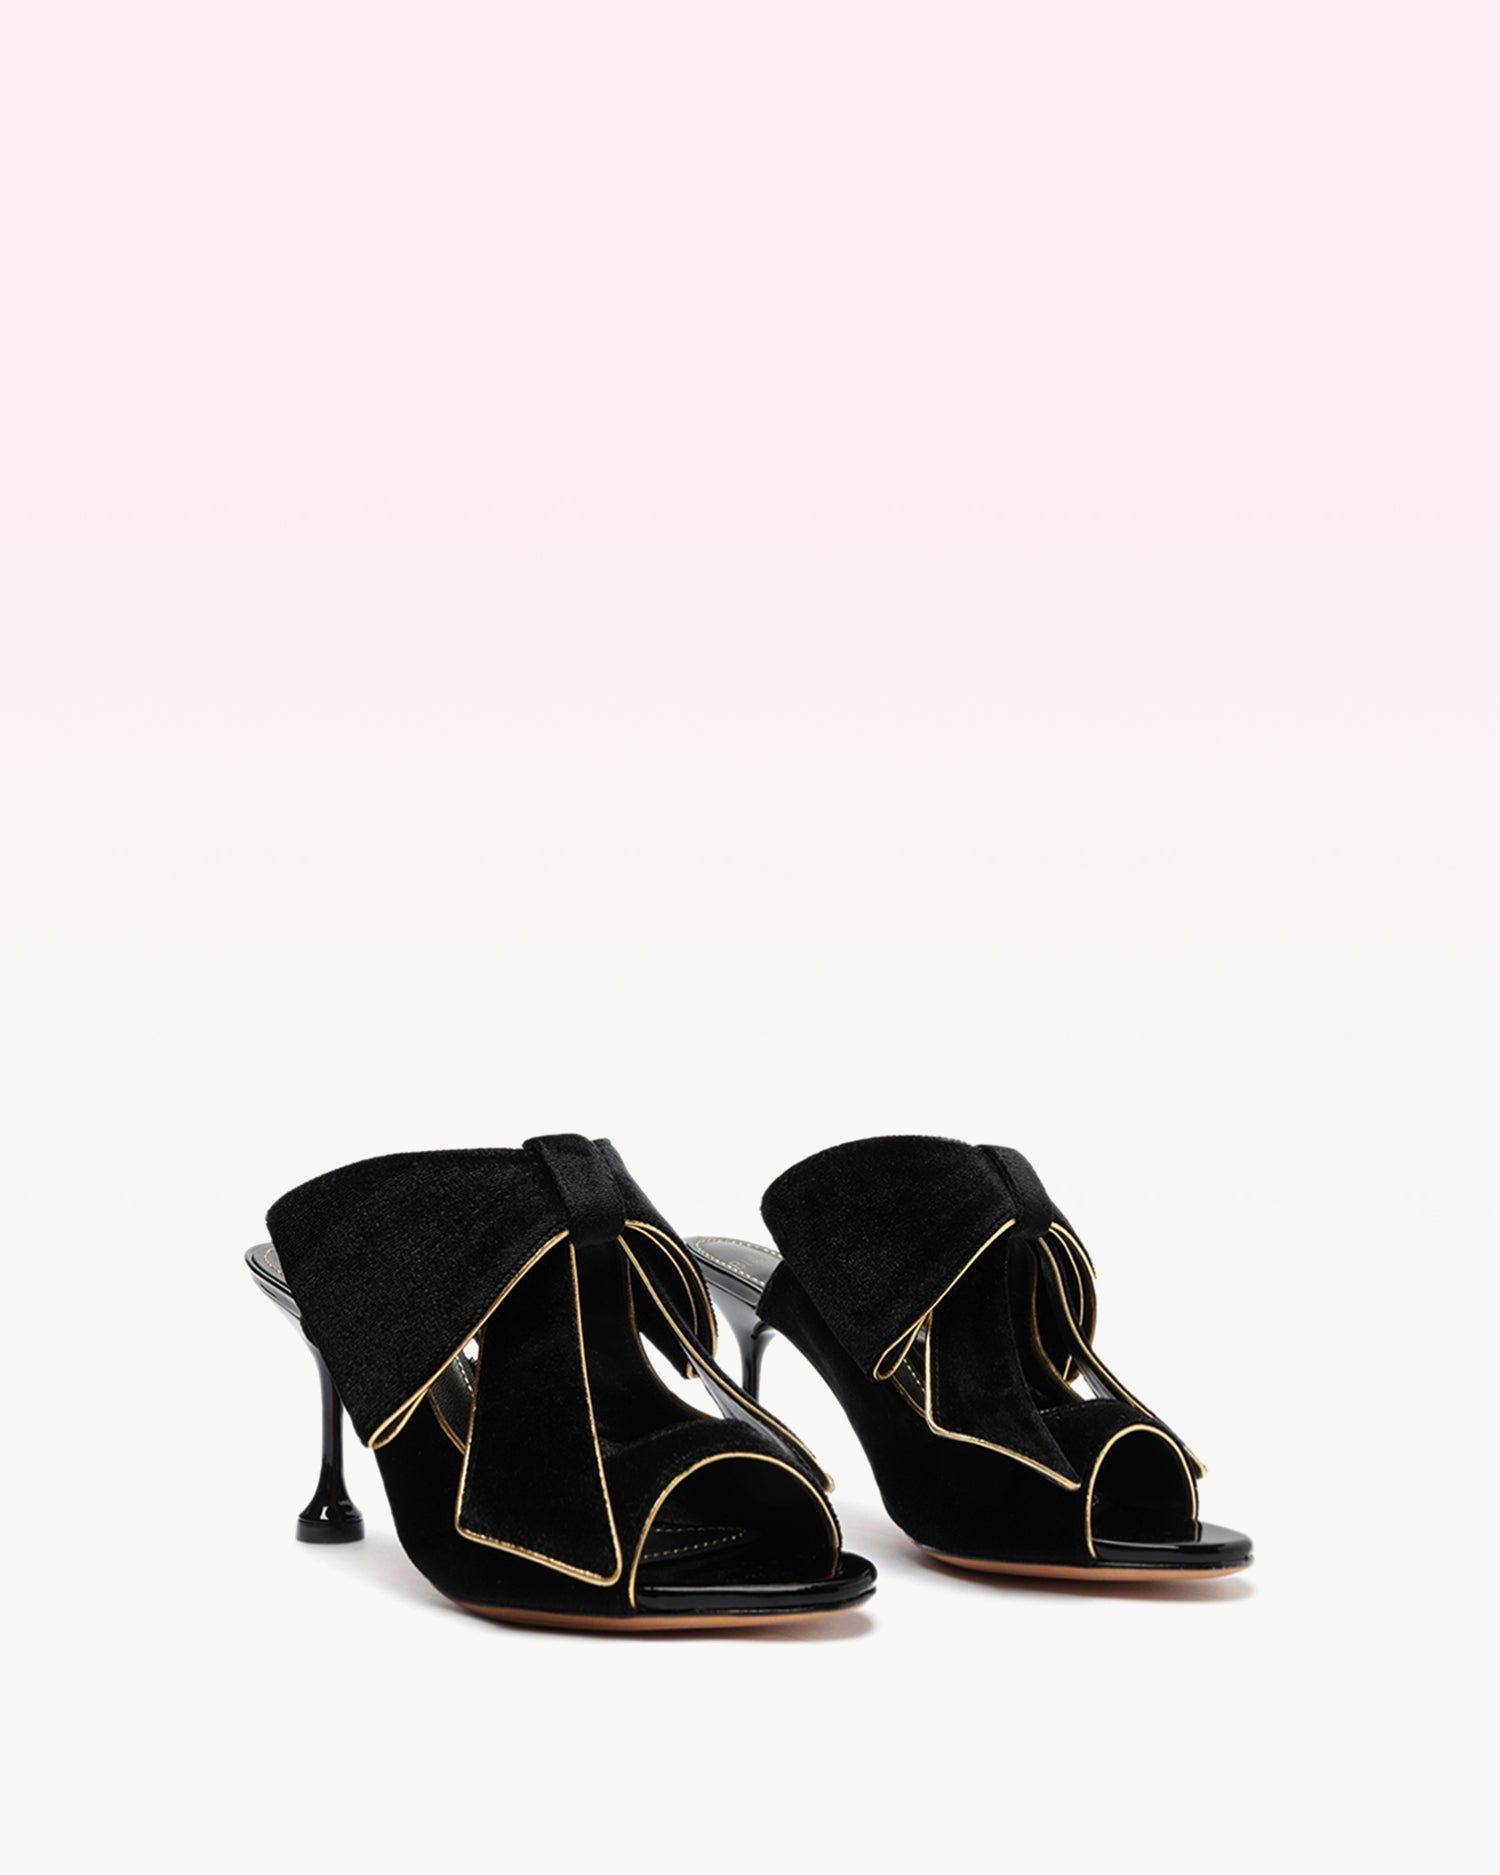 Lupita 85 Velvet Black Sandals F/23   